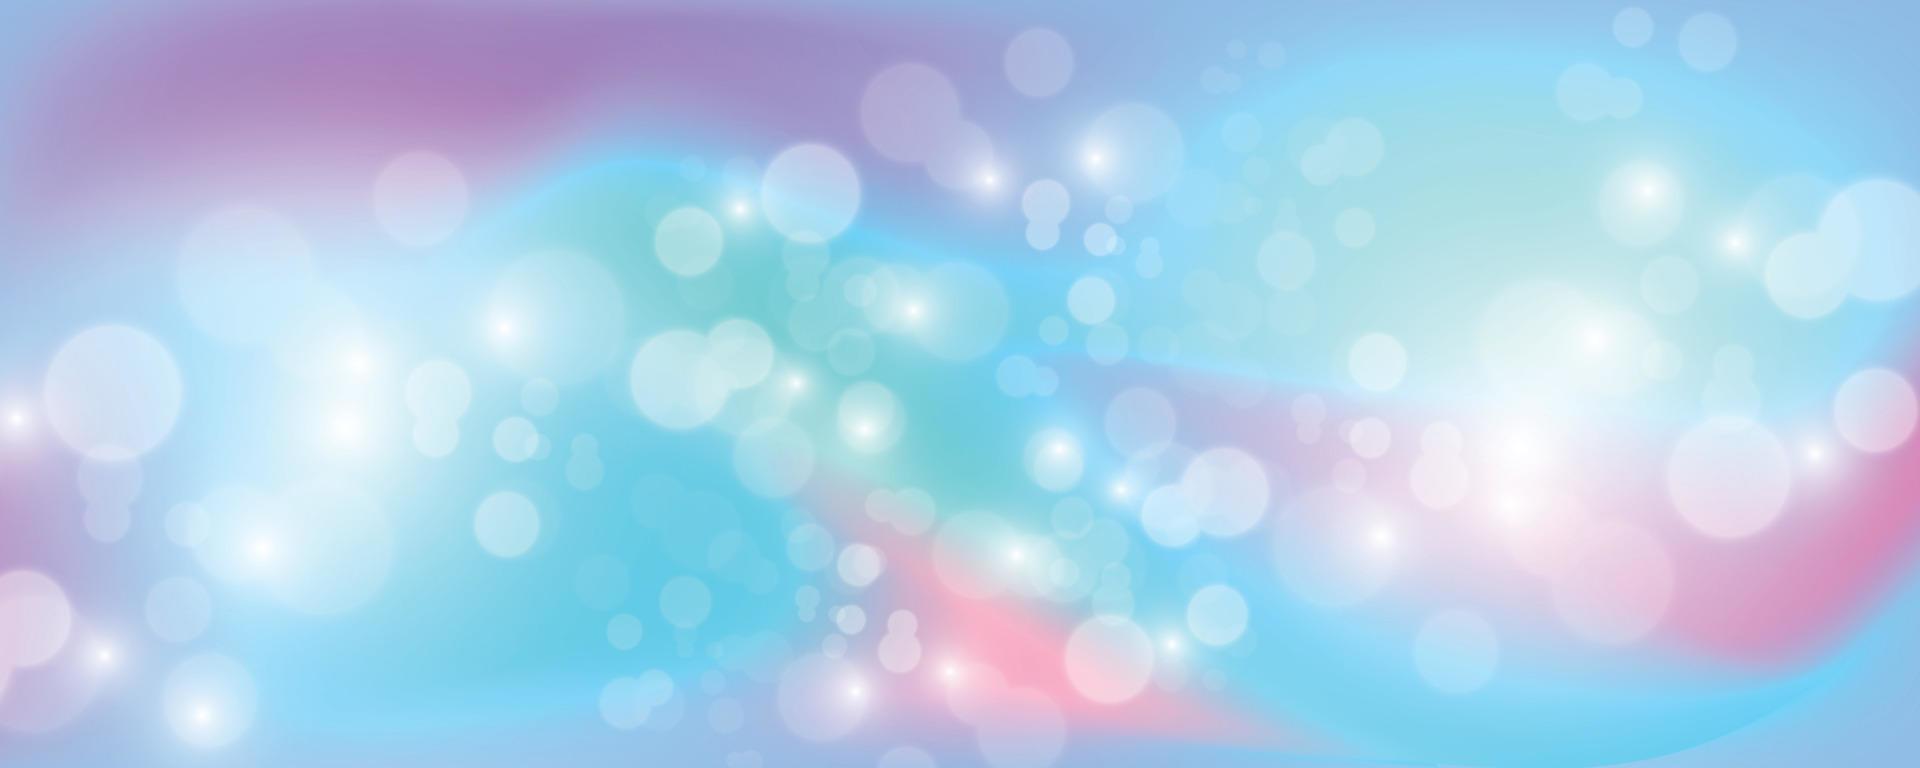 sfondo olografico luminoso con scintillii, illustrazione vettoriale. vettore